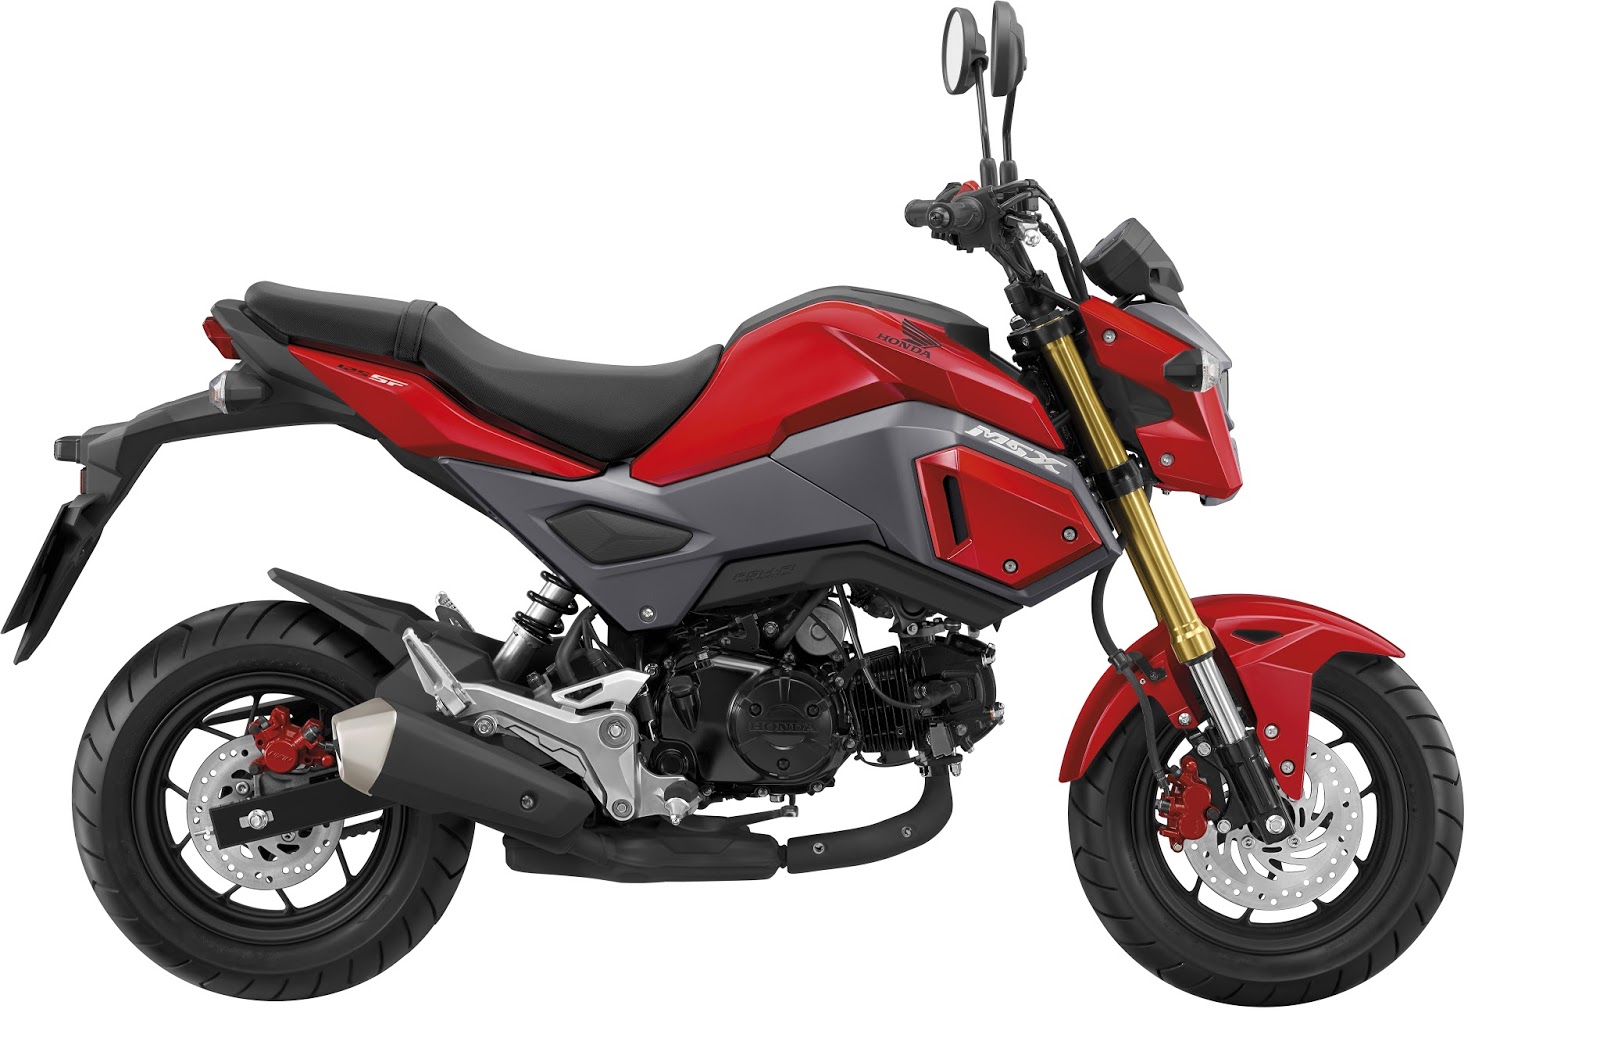 Referensi Harga Motor Yamaha Terbaru 2016 Spesifikasi Dan Harga